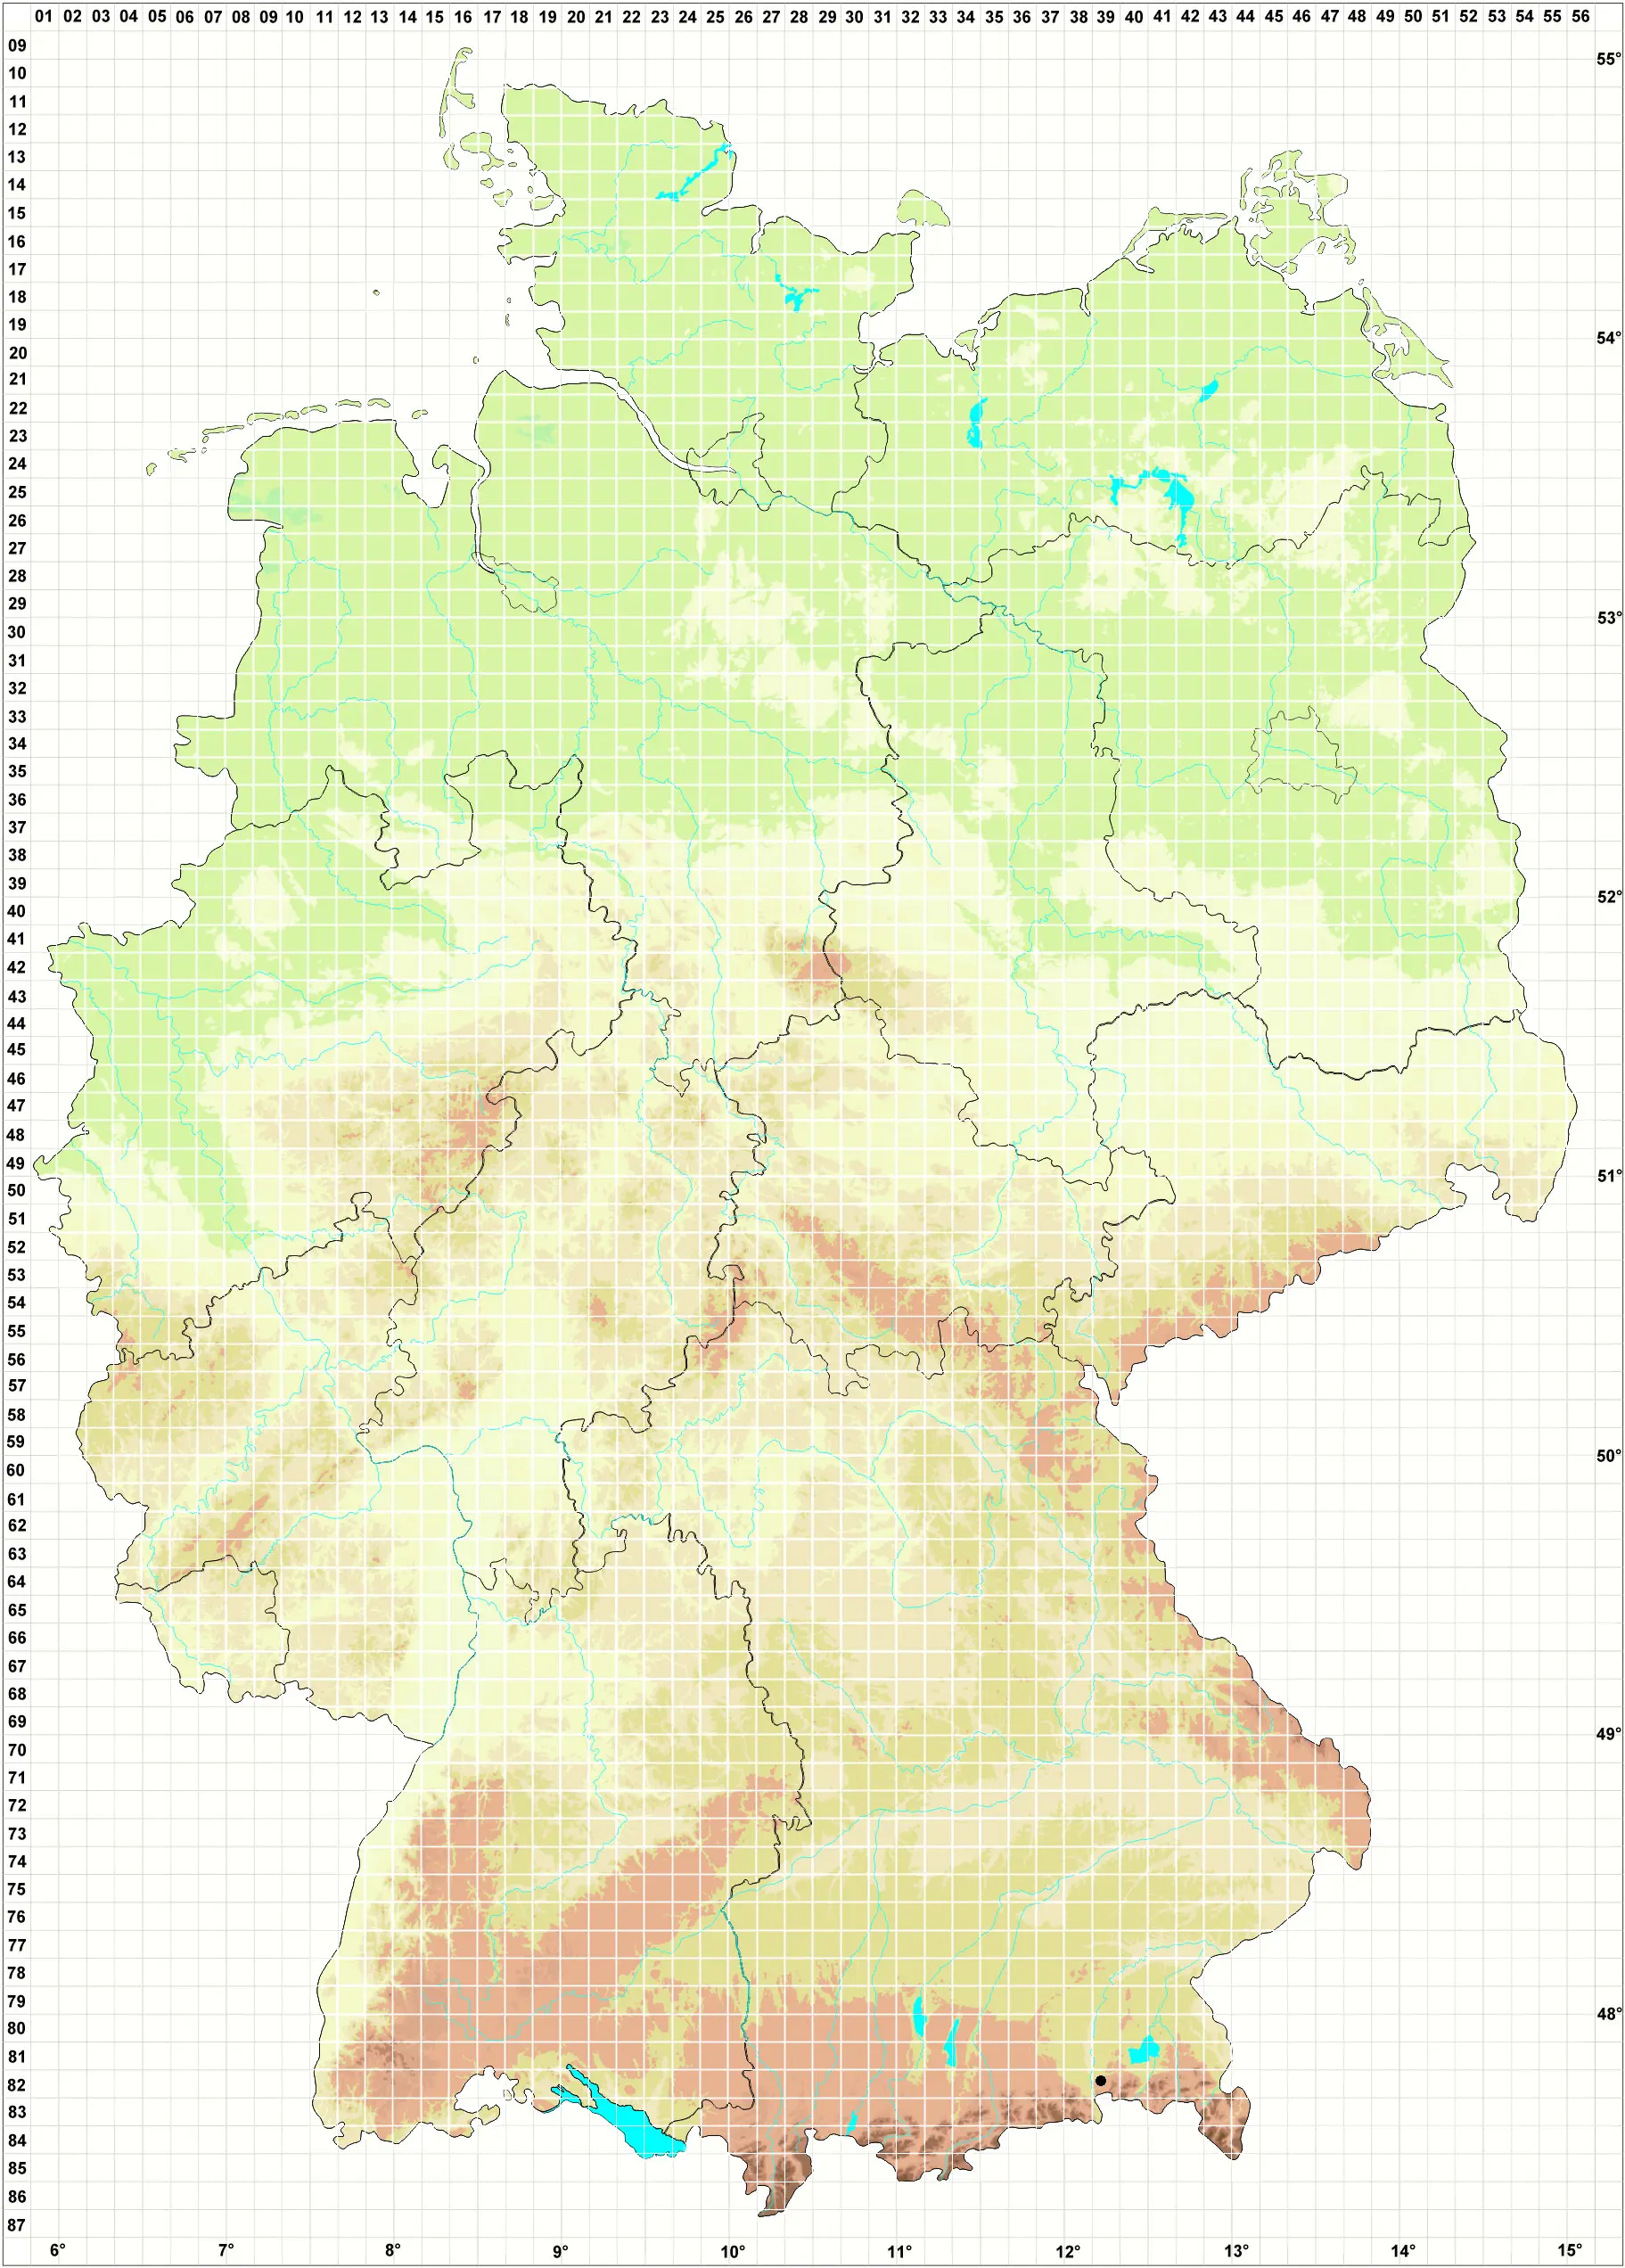 Karte E. Fischer-Wellenborn Sammelkartierung